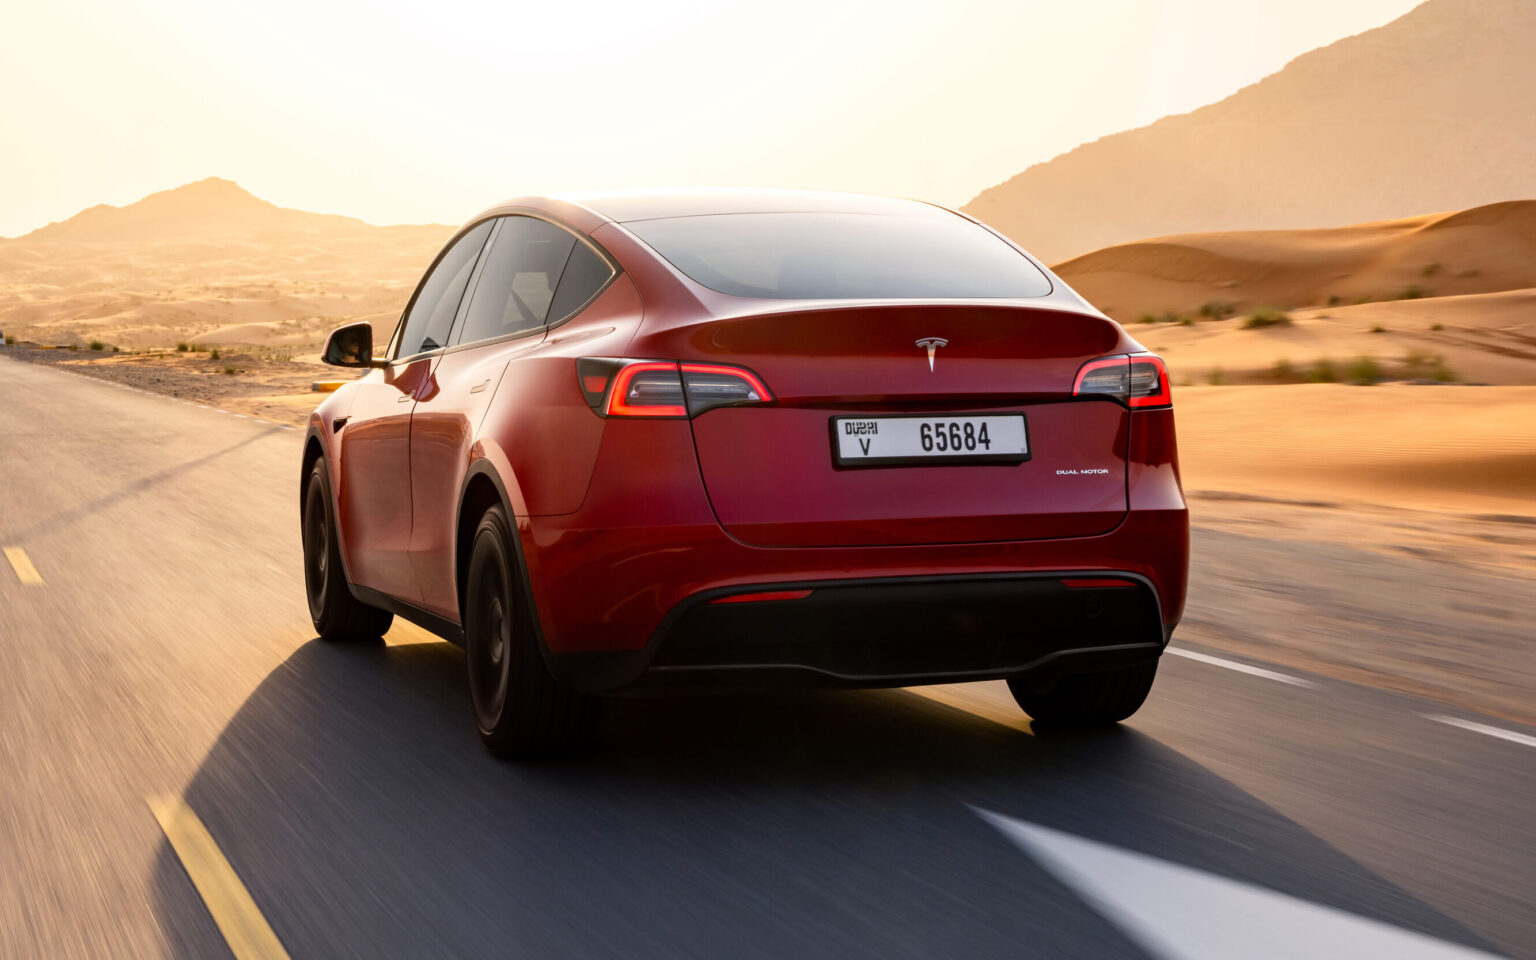 2023 Tesla Model Y Q3 2023 Sales Exterior Image 4